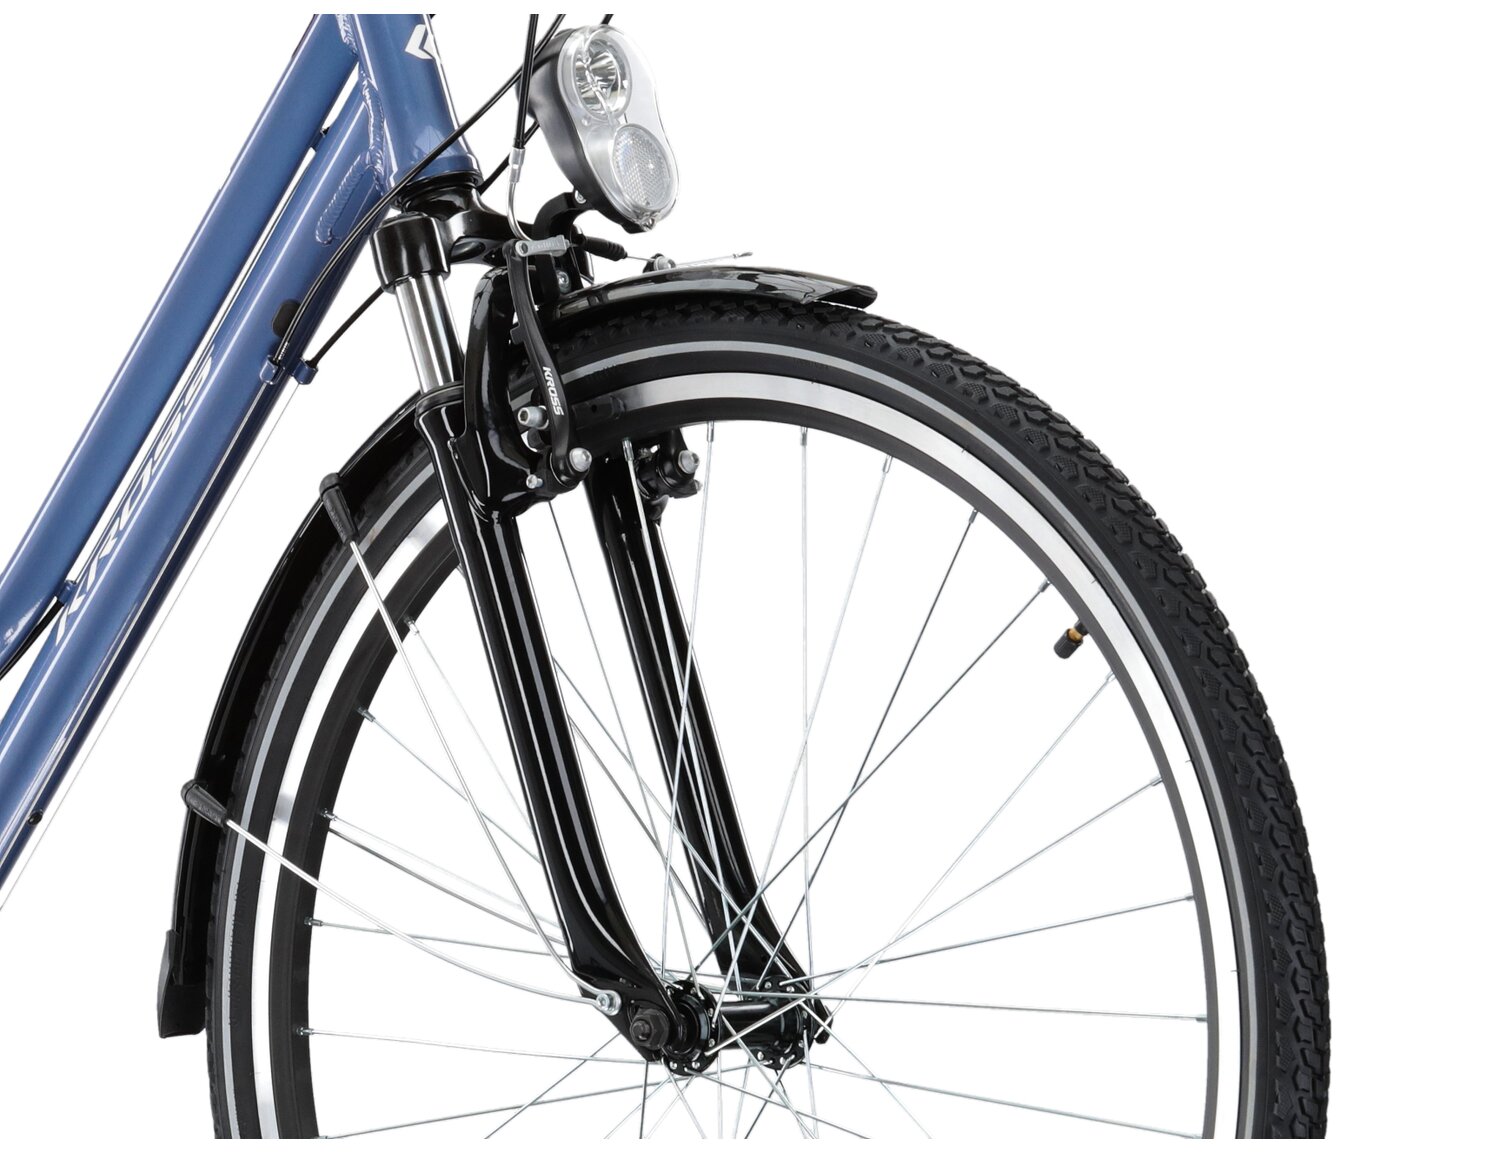 Aluminowa rama, amortyzowany widelec KROSS oraz opony Wanda w rowerze trekkingowym damskim KROSS Trans 2.0 